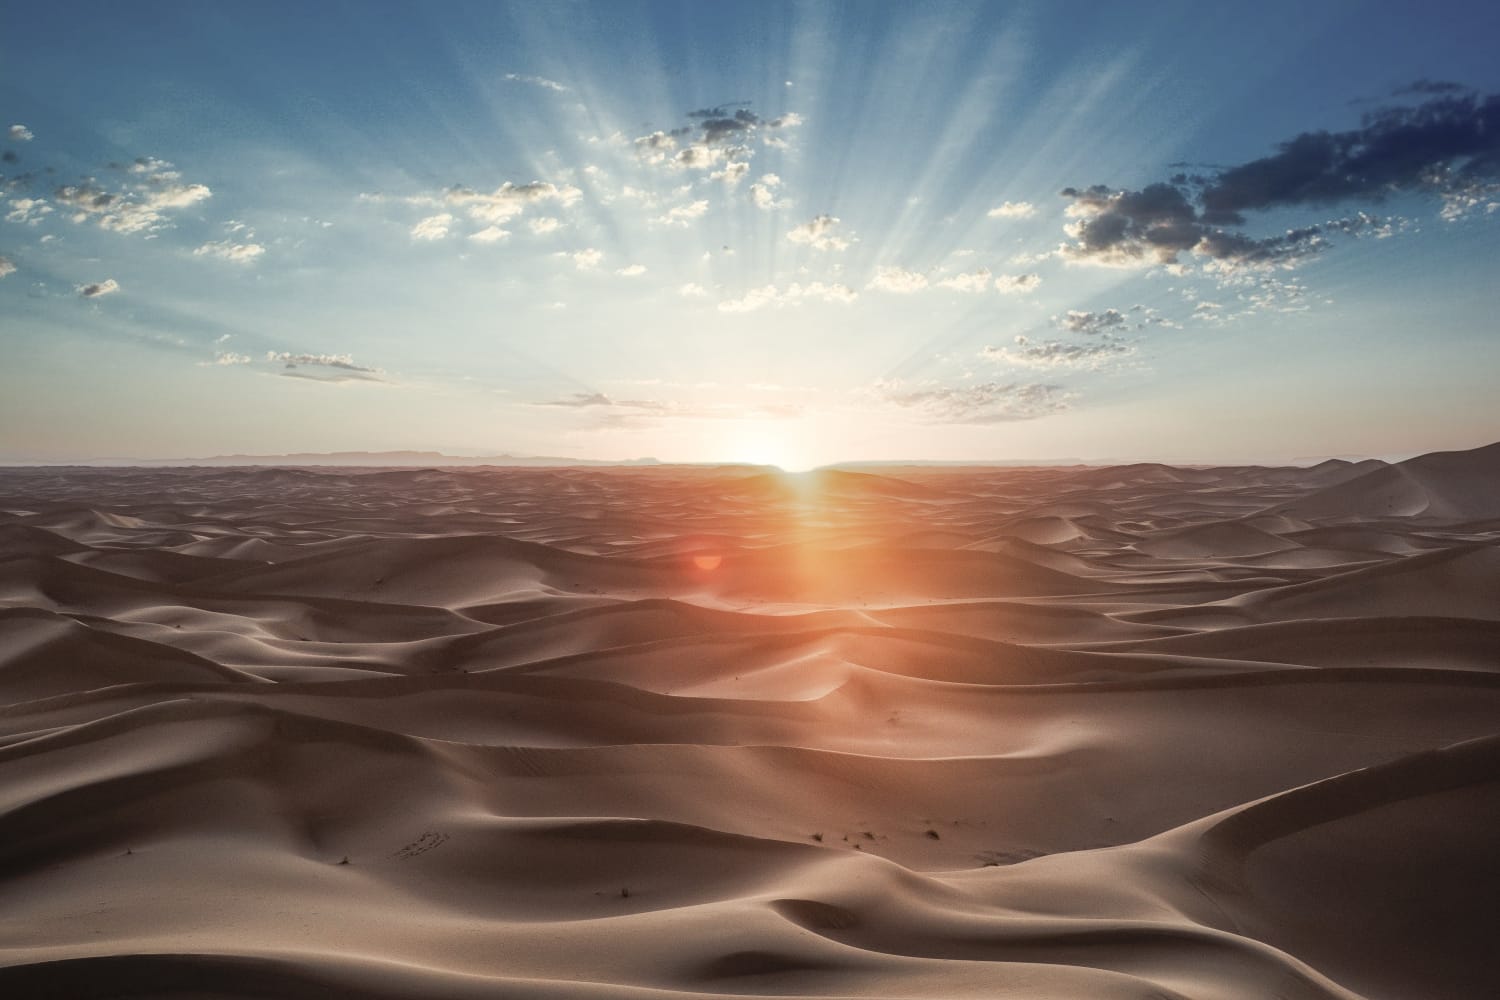 Desert sand dunes + Black desert